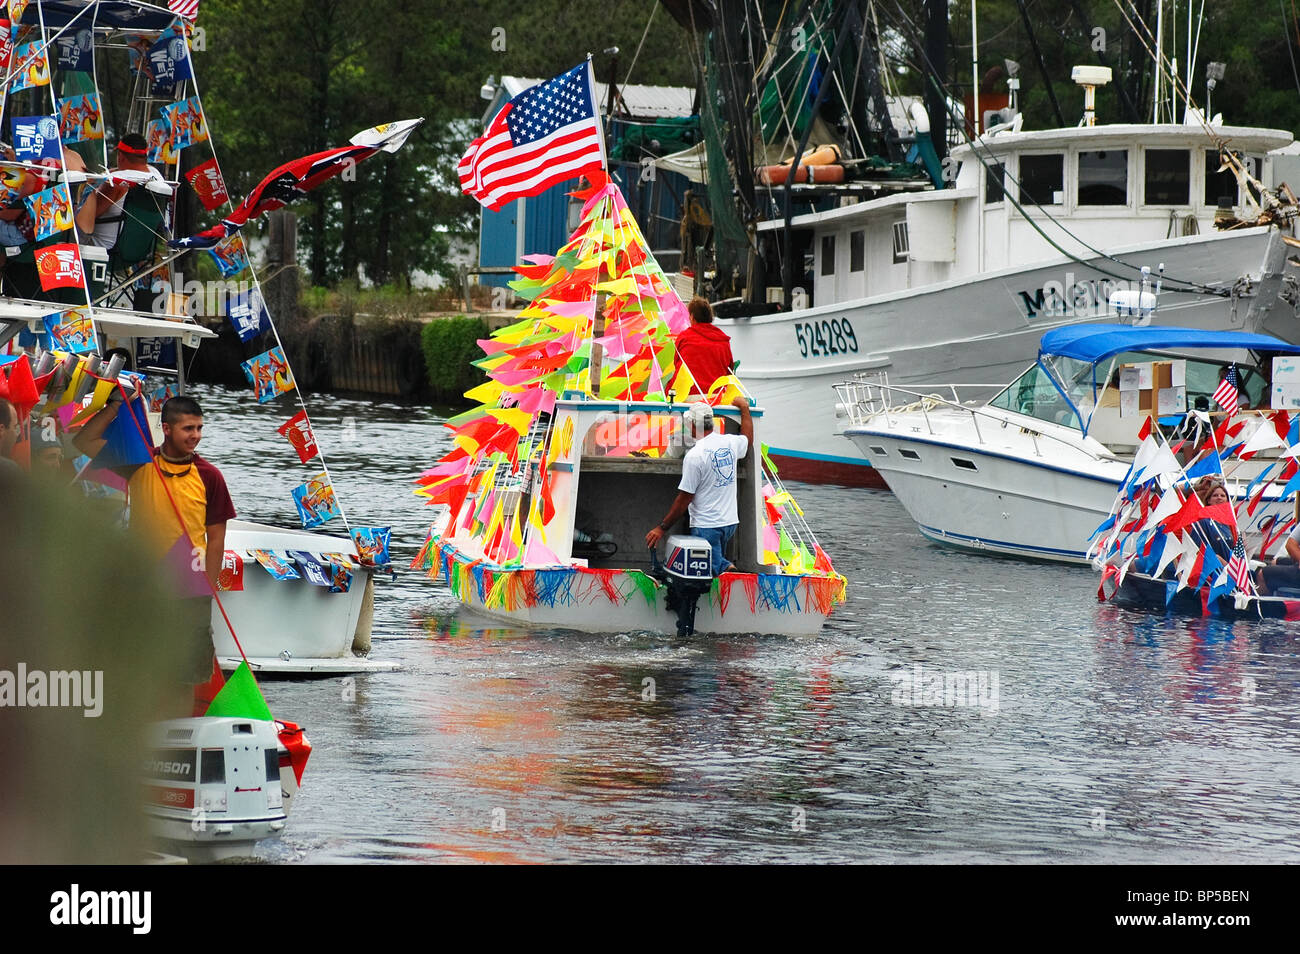 Bénédiction annuelle de la flotte à Bayou La Batre Alabama de 'Forrest Gump' fame Banque D'Images